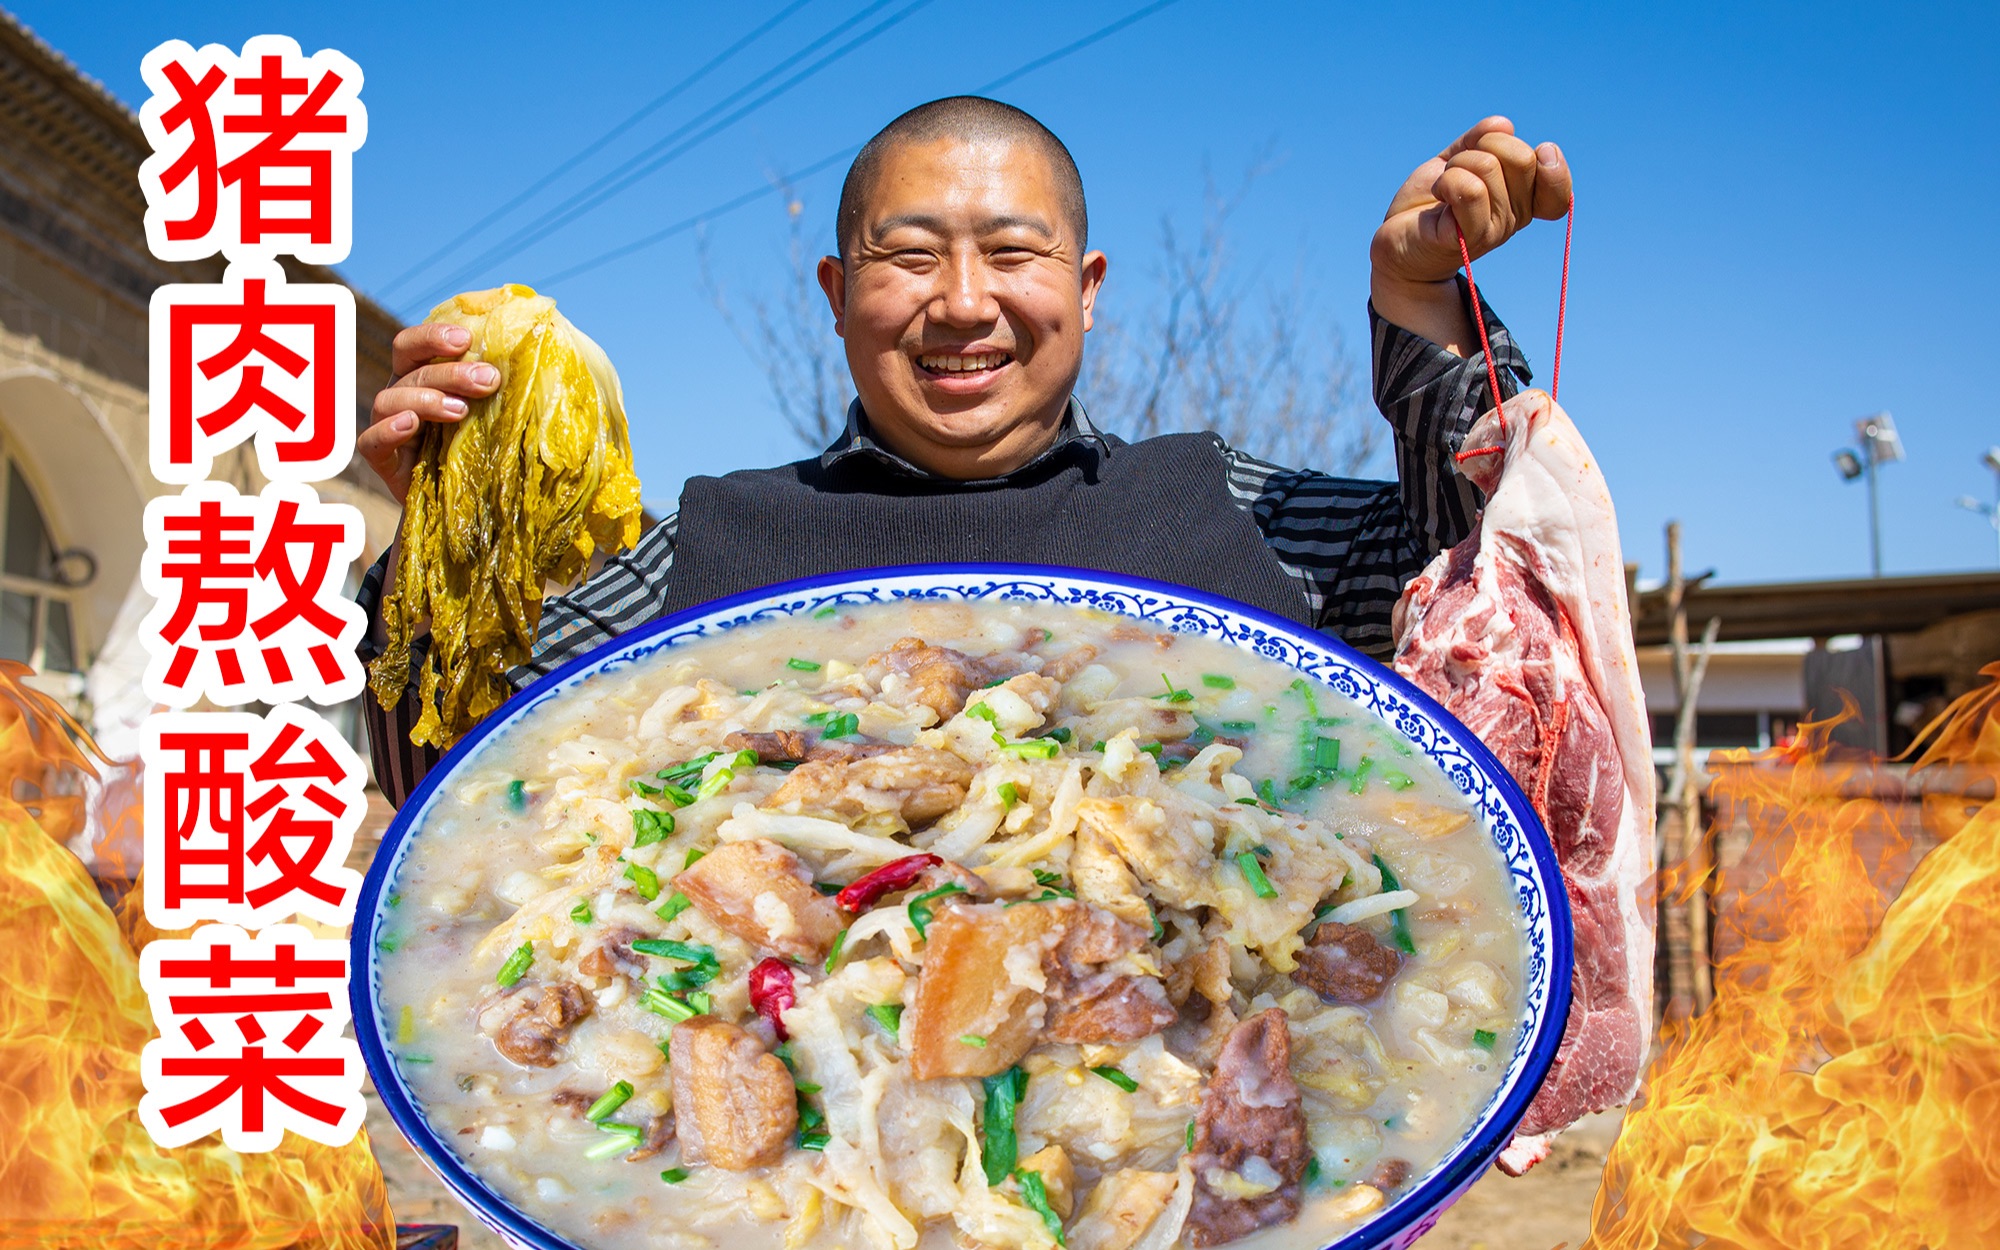 猪肉熬酸菜,狗蛋用自己的做法,好吃,陕北人的最爱猪肉熬酸菜,狗蛋用